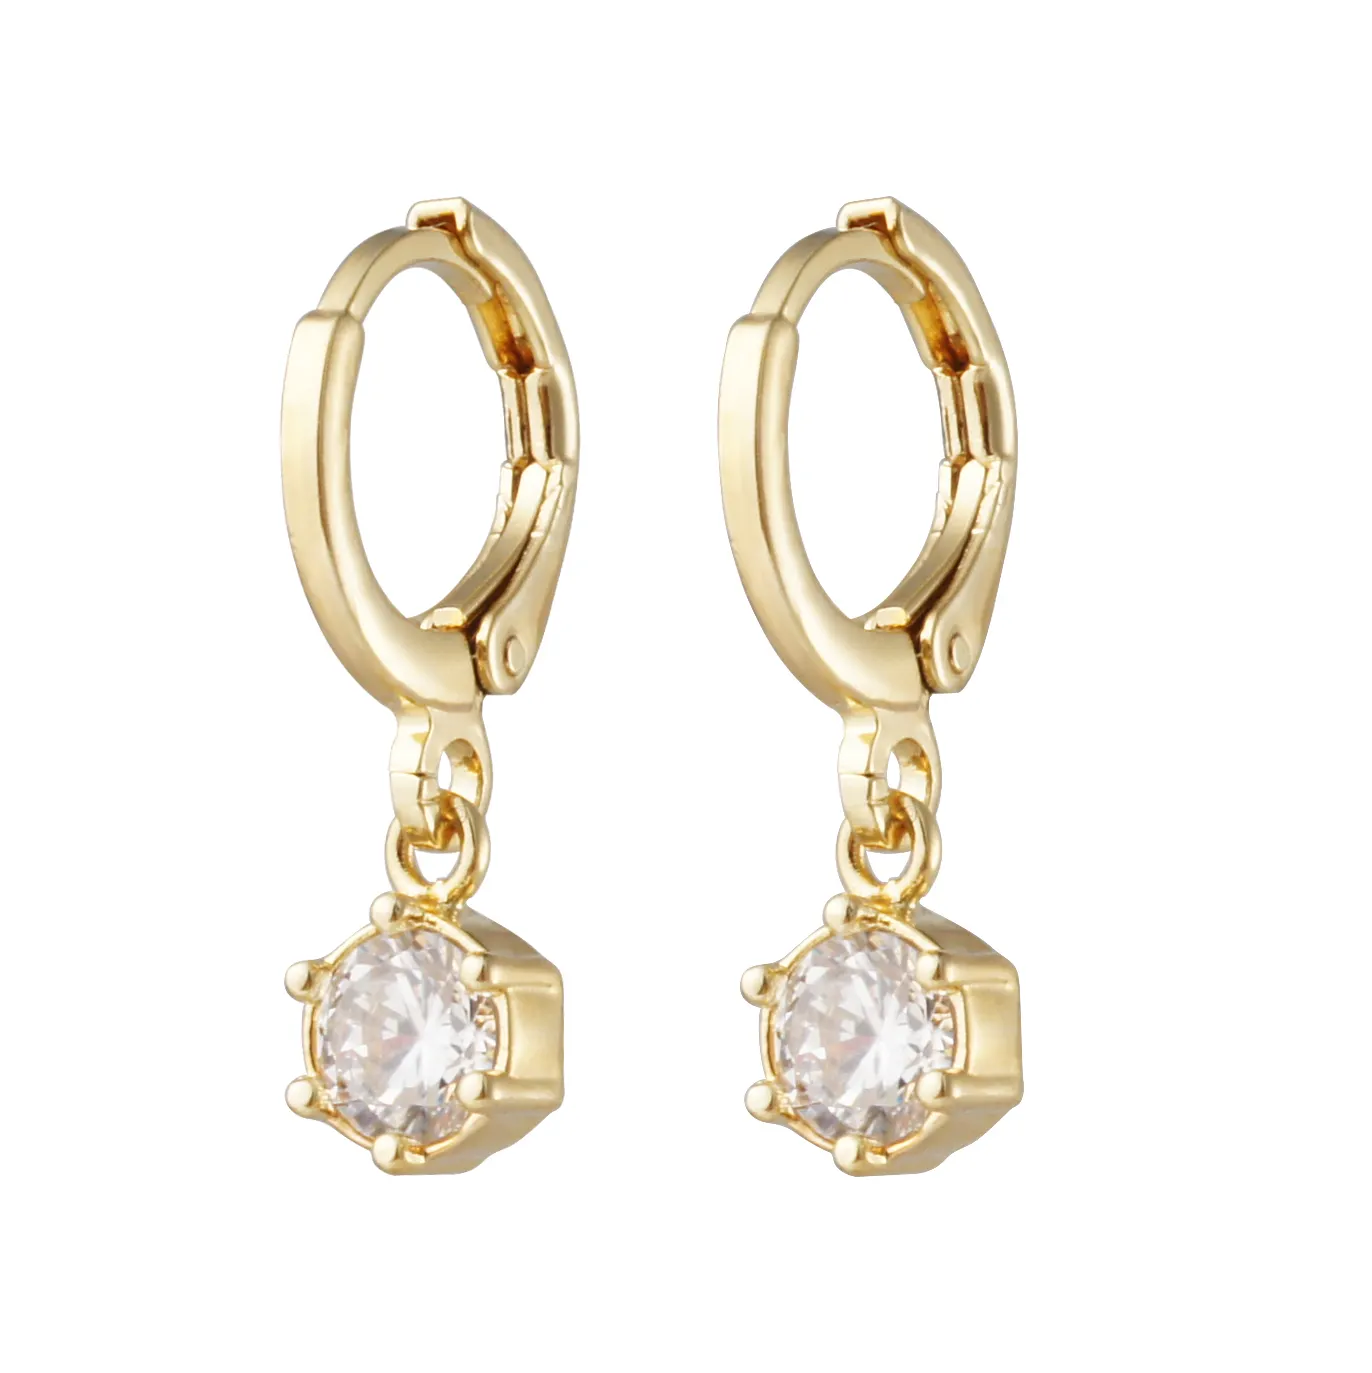 Ellie Gold CZ Earhanger Earrings For Women Zircon Hoop Earrings Jewelry Earrings